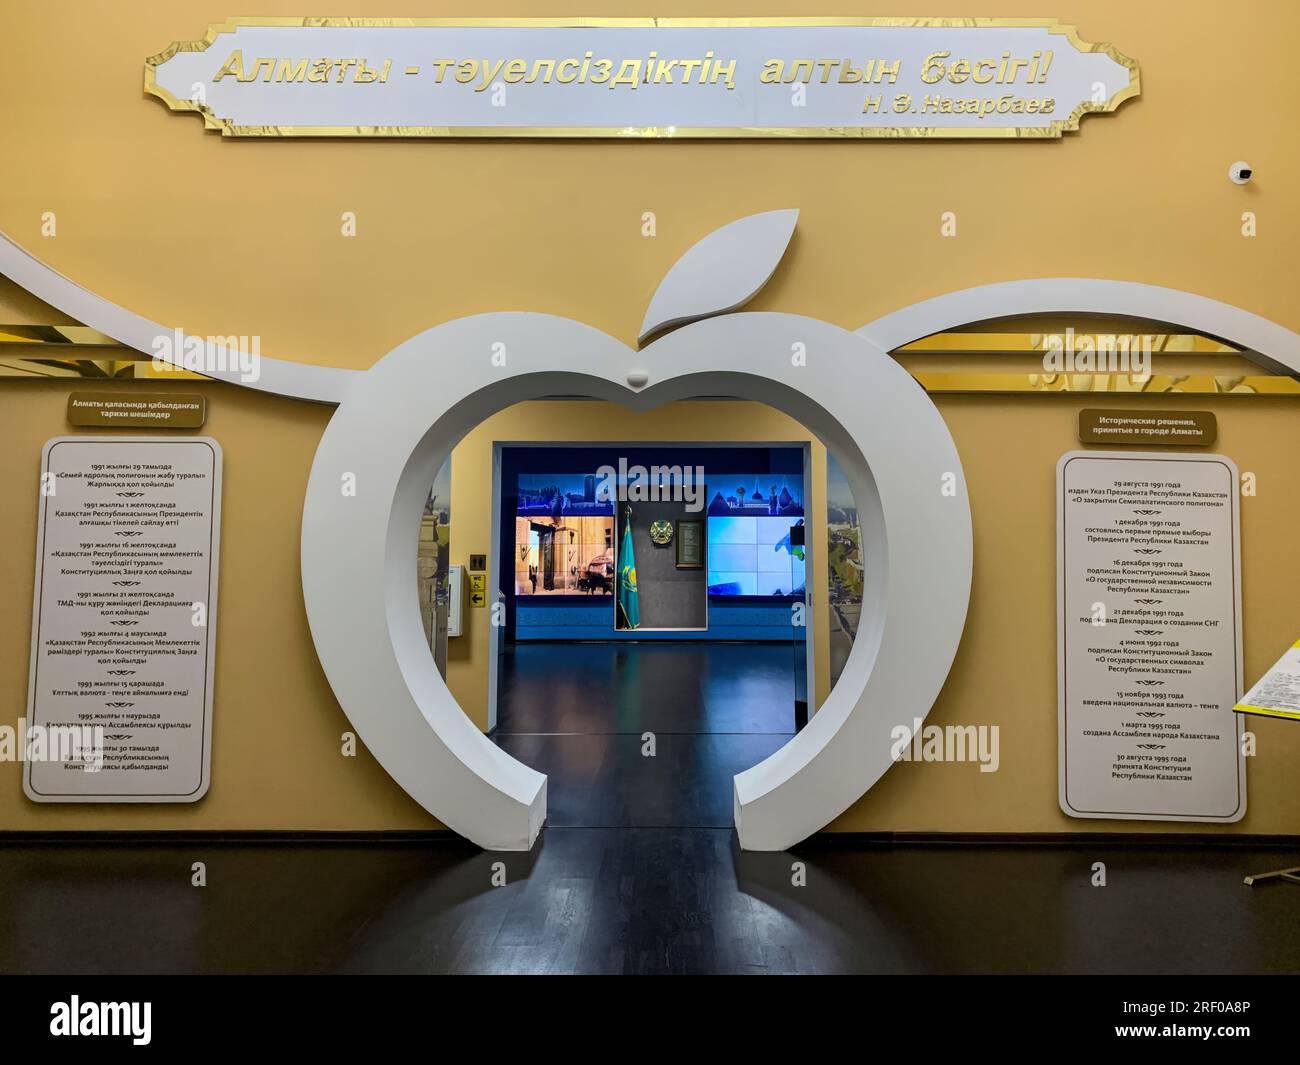 Kasachstan, Almaty. Museum of Almaty History, Innenansicht. Kasachstan behauptet, der Ort zu sein, an dem Äpfel zum ersten Mal entdeckt wurden. Stockfoto